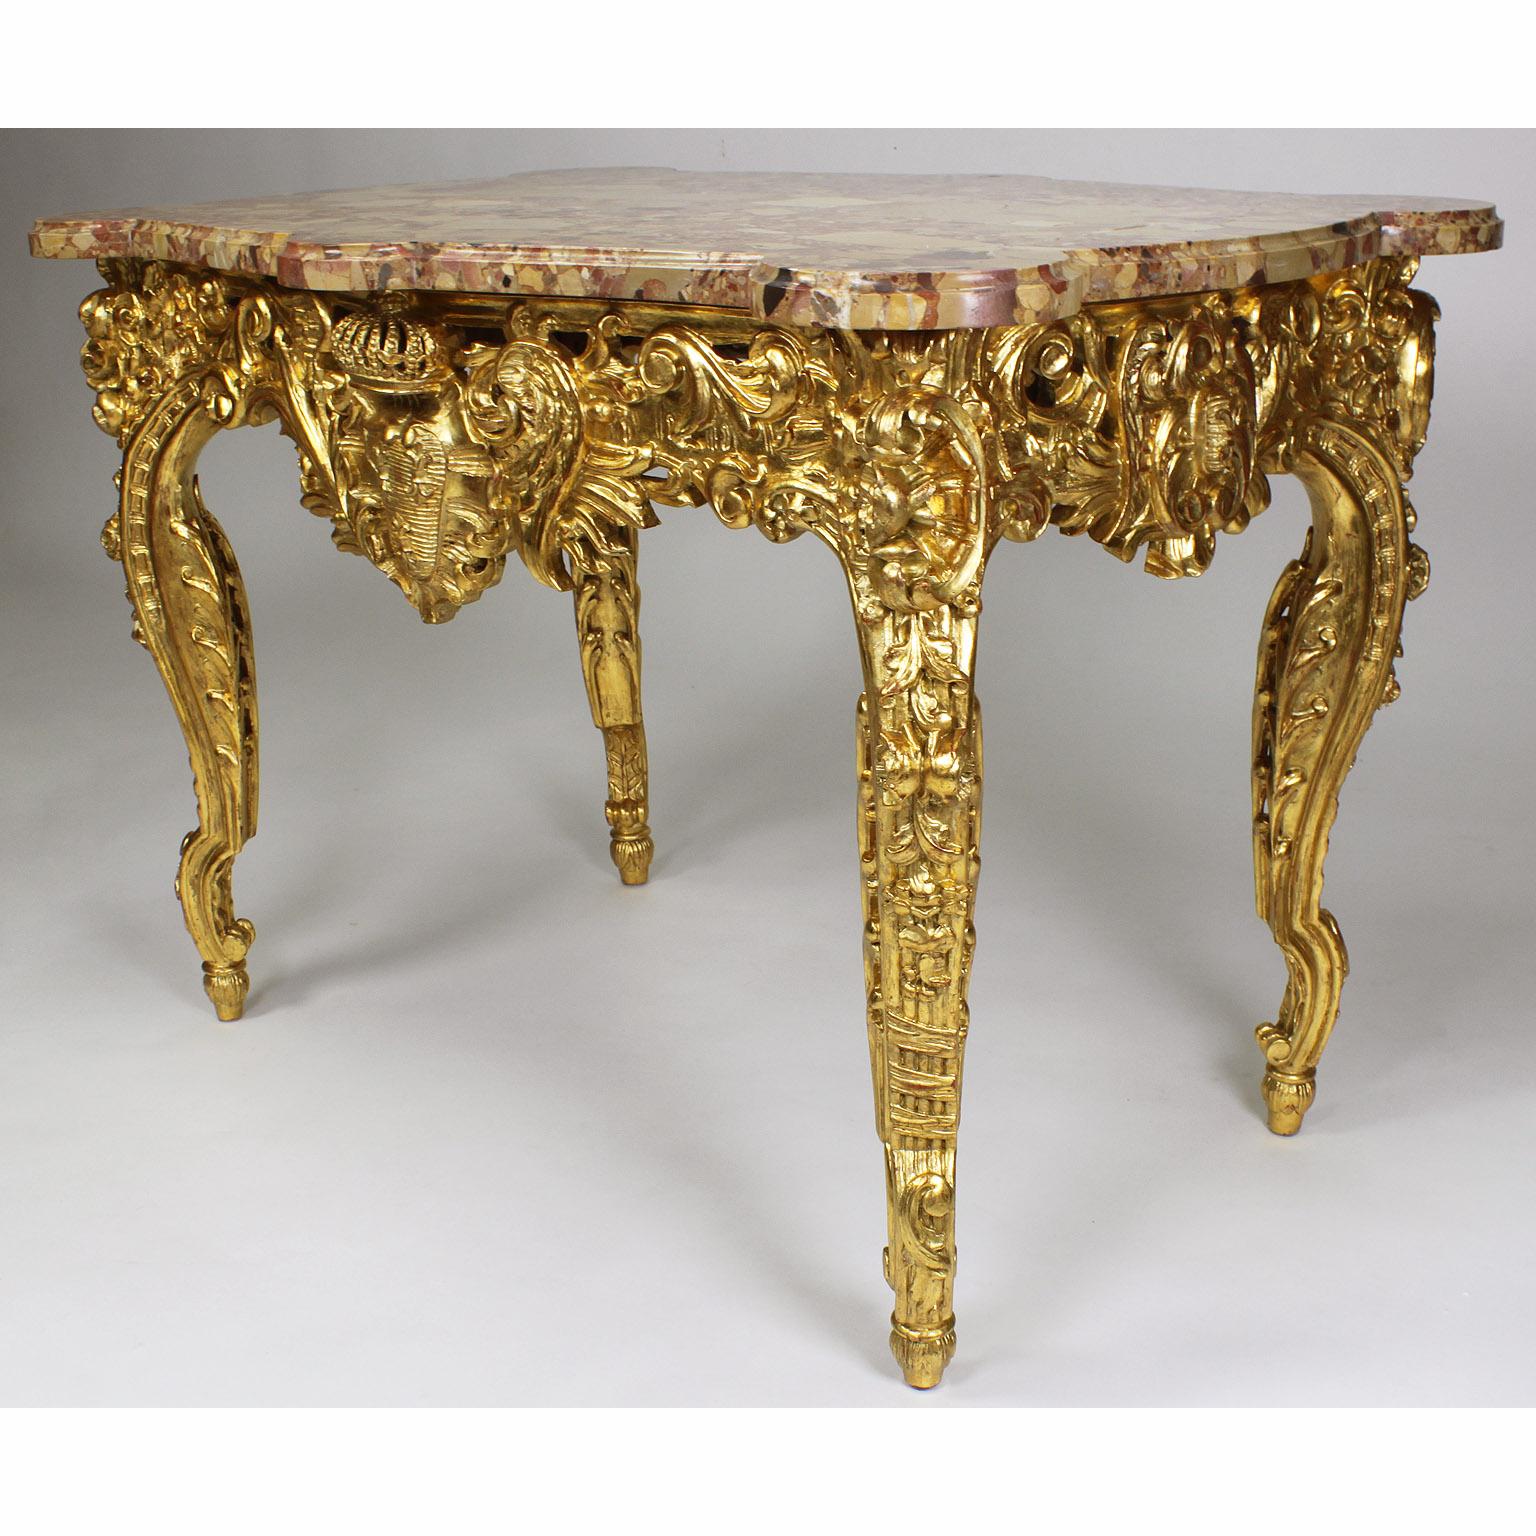 Ein sehr schöner französischer Tisch im Stil Louis XV, geschnitzt aus vergoldetem Holz, mit einer Platte aus Brêche d'Alep-Marmor. Die serpentinenförmigen Vorder-, Rück- und Seitenschürzen dieses fein geschnitzten Tisches sind mit einem königlichen